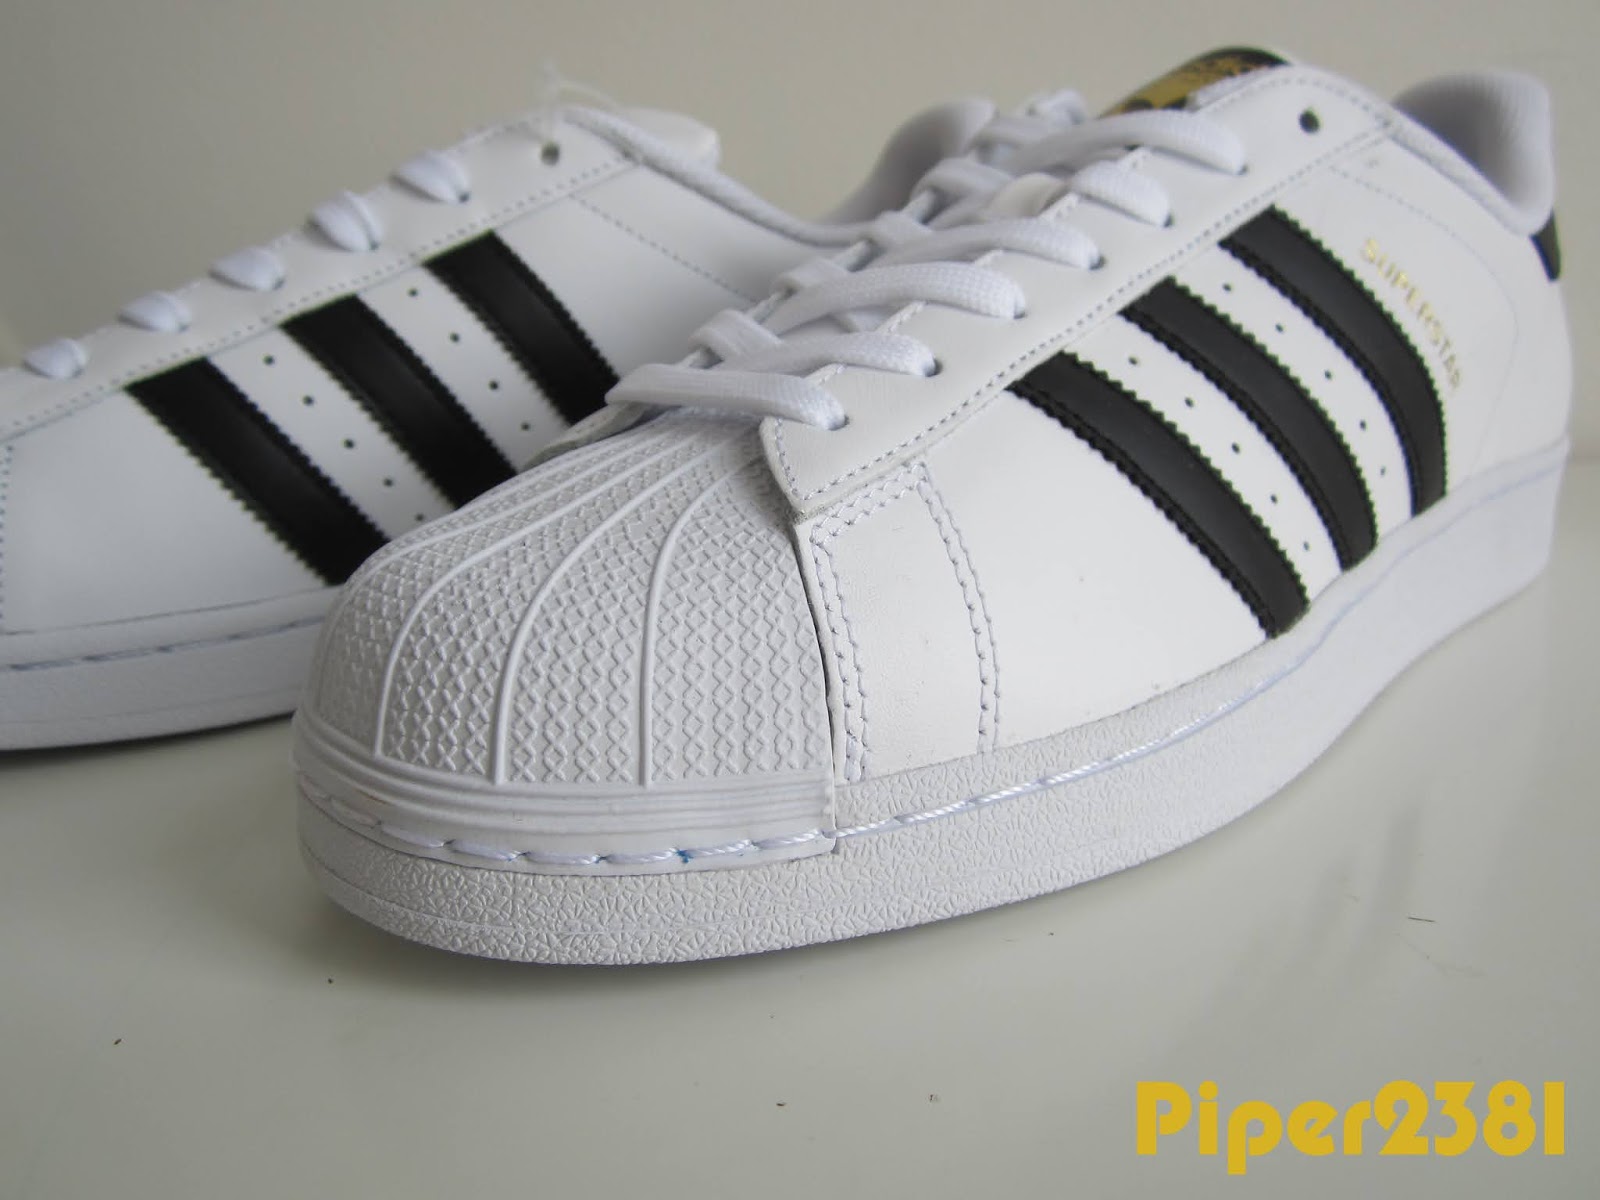 Piper2381: Adidas Superstar